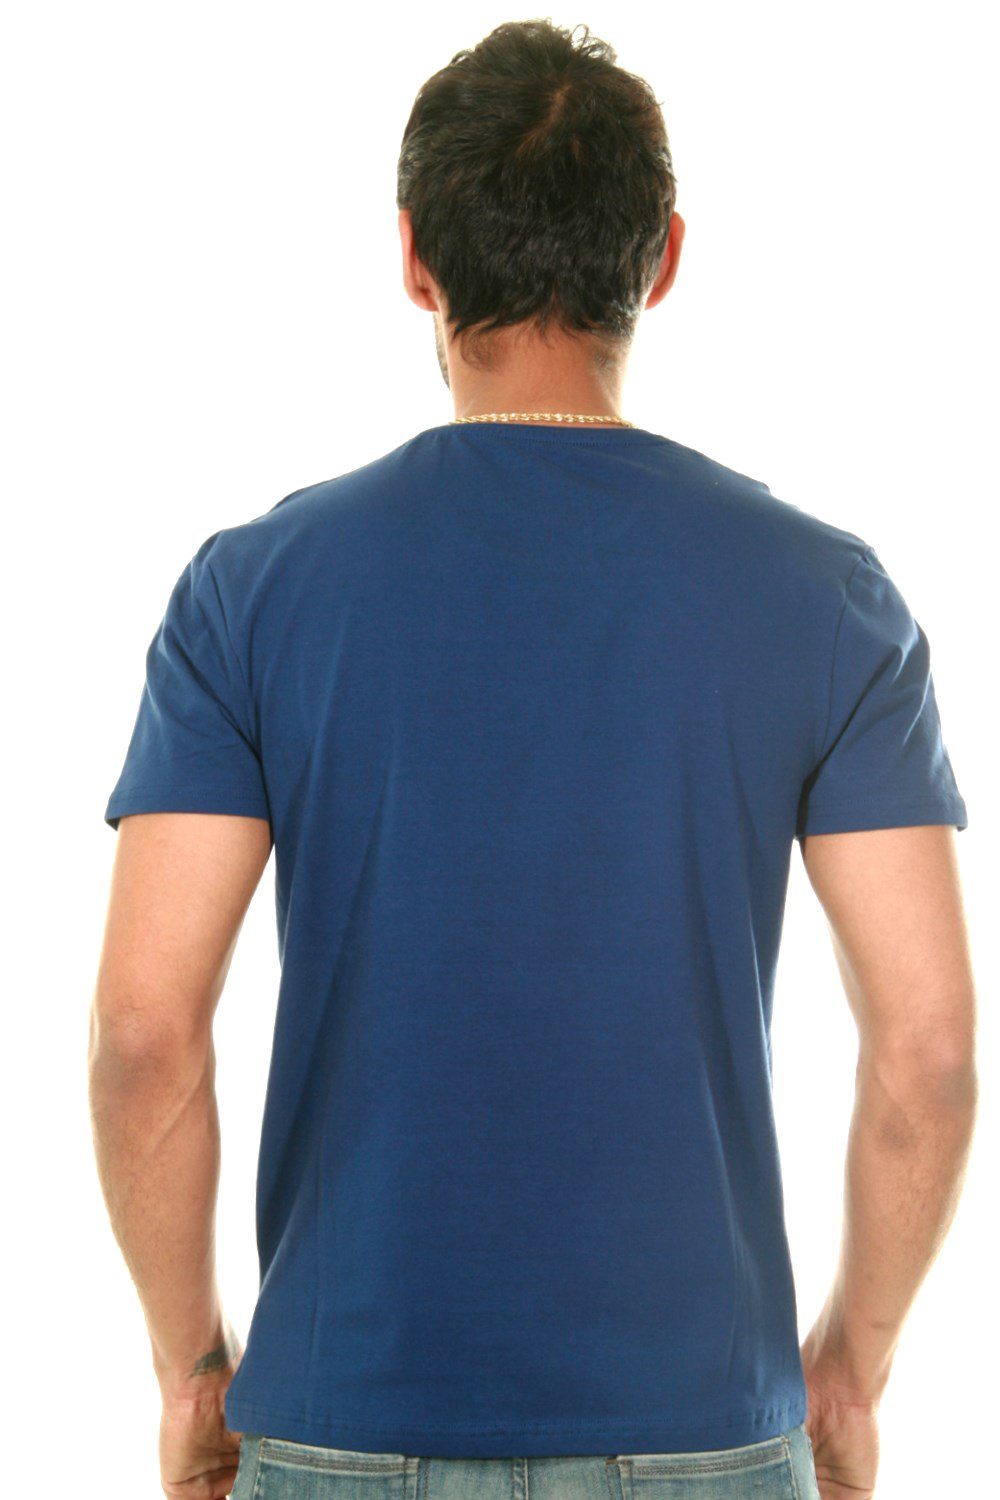 FIOCEO blau Rundhalsshirt